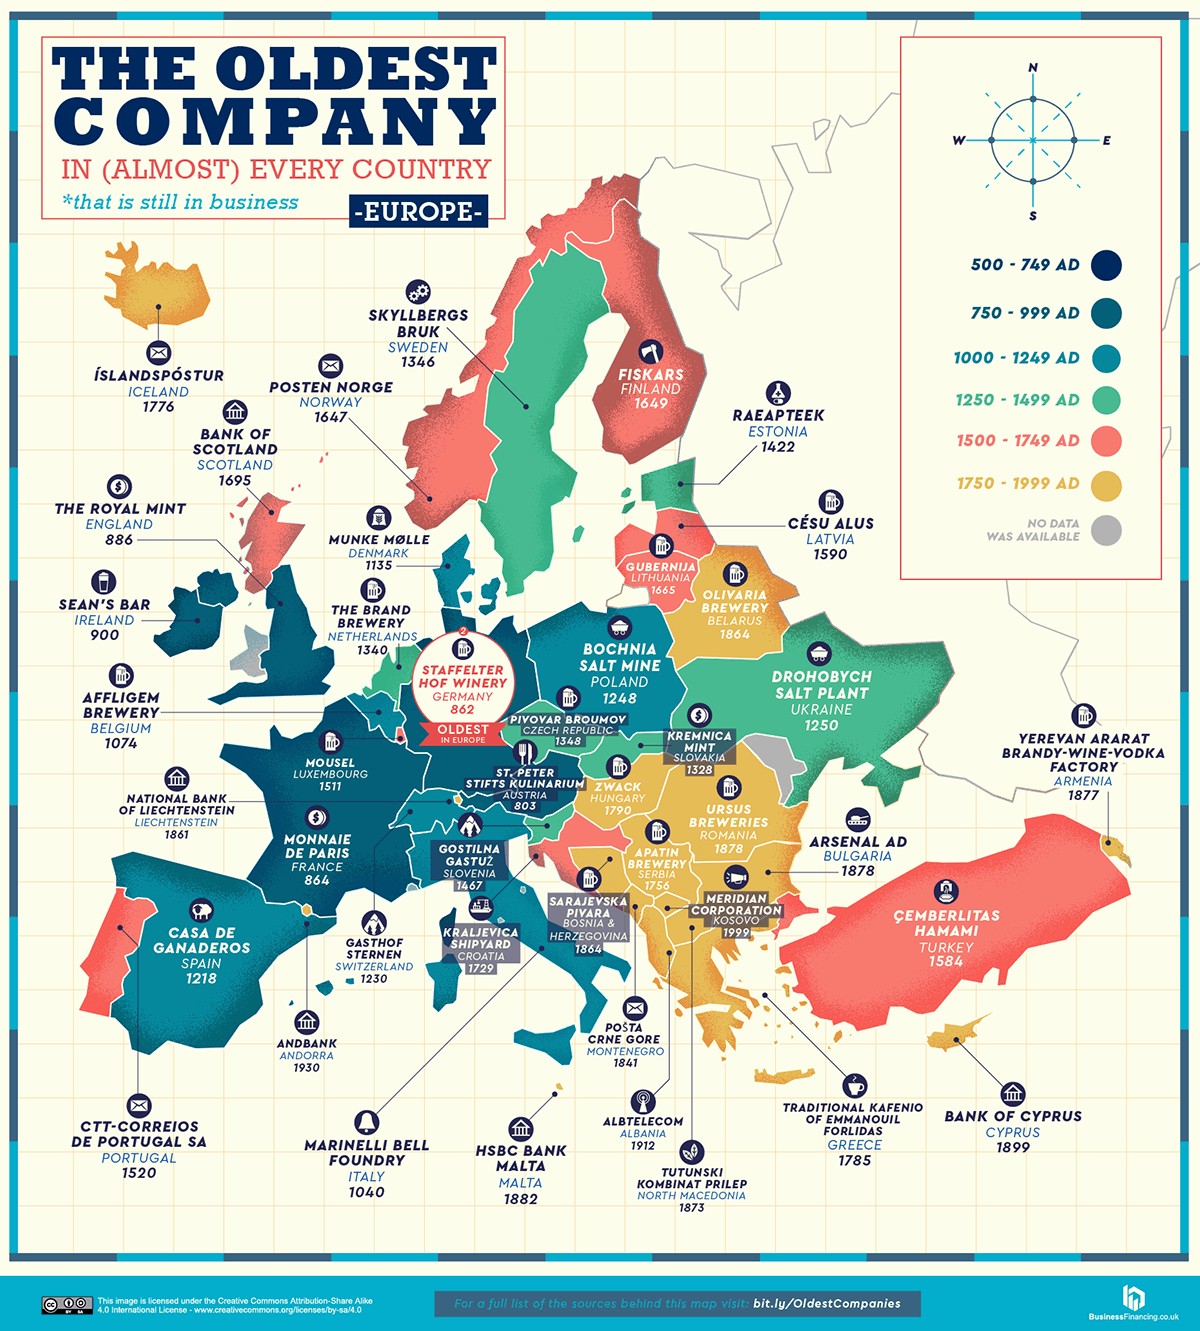 Mapa com as empresas mais antigas em atividade da Europa (Foto: Reprodução/Business Insider)